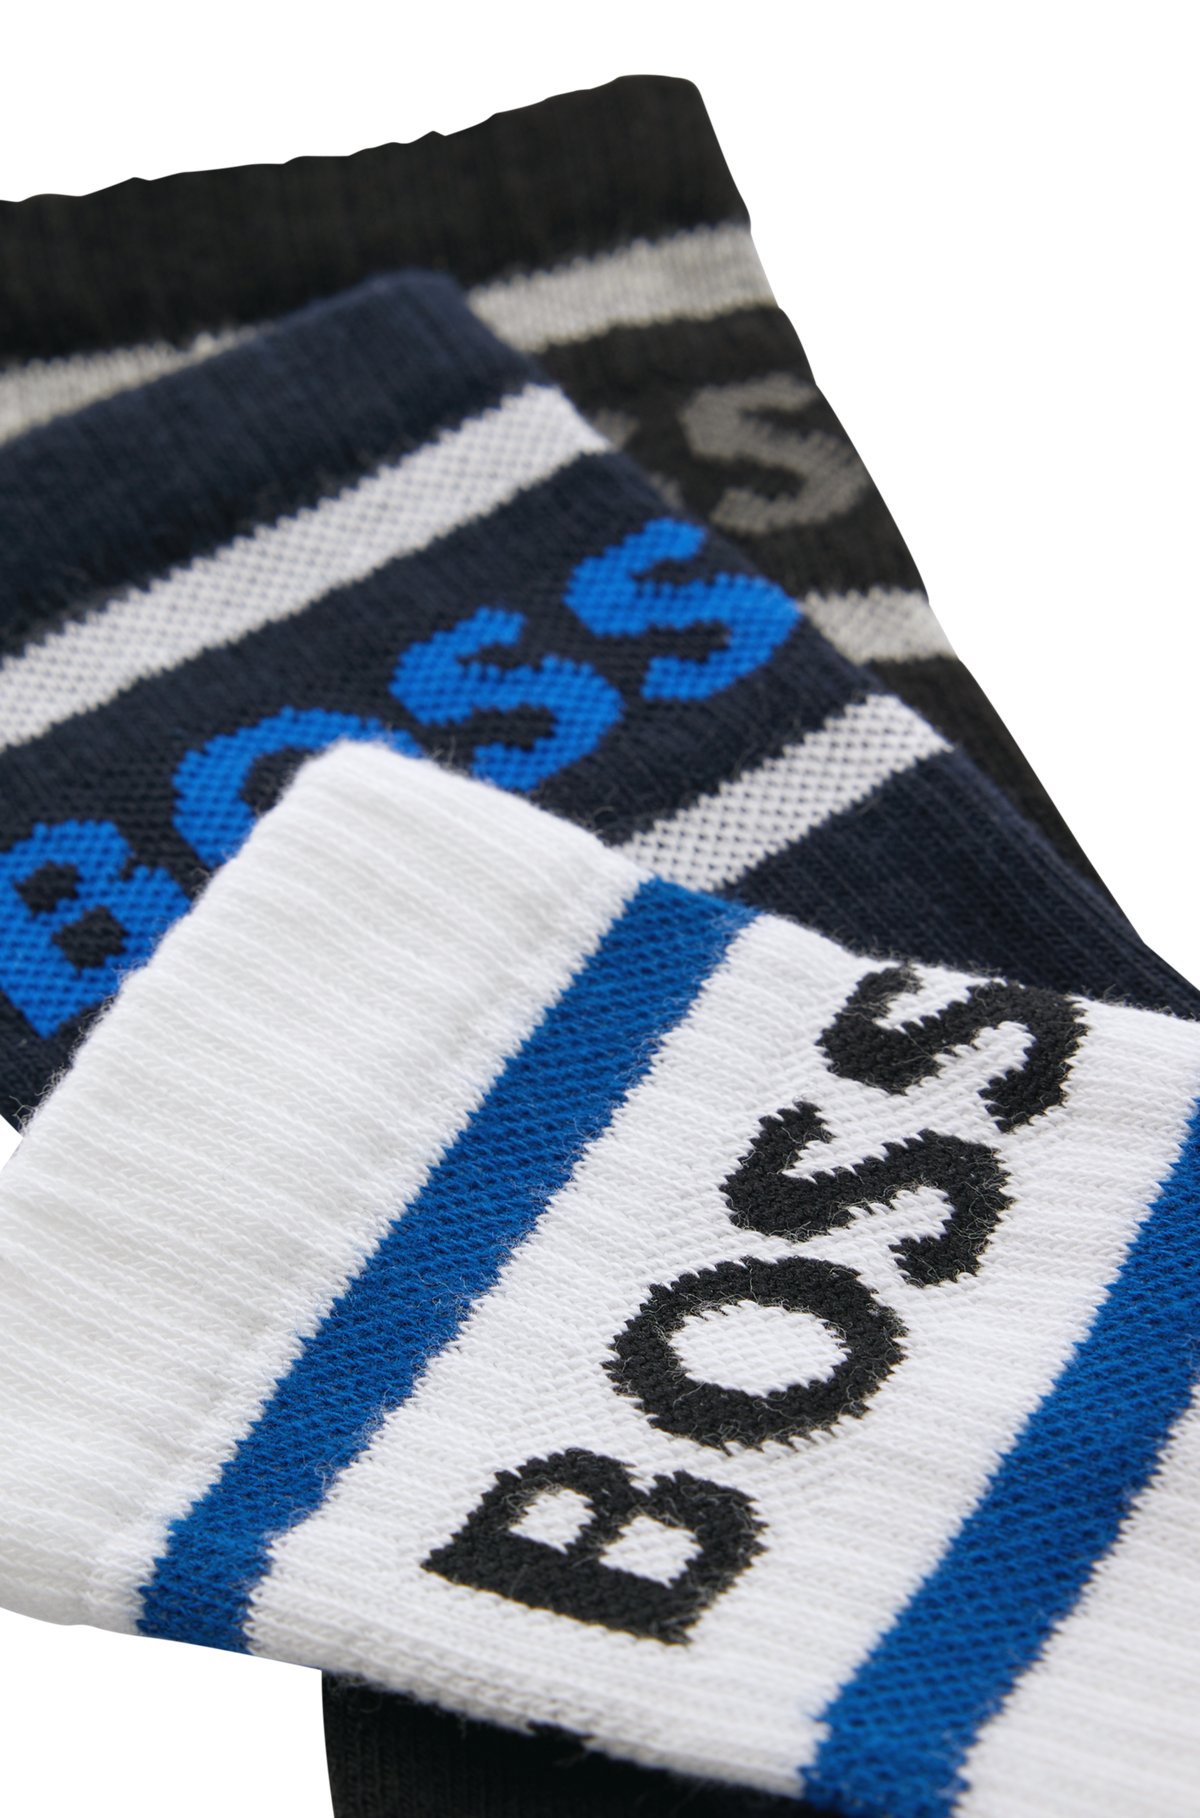 Set van drie paar korte sokken met strepen en logo, Bedrukt